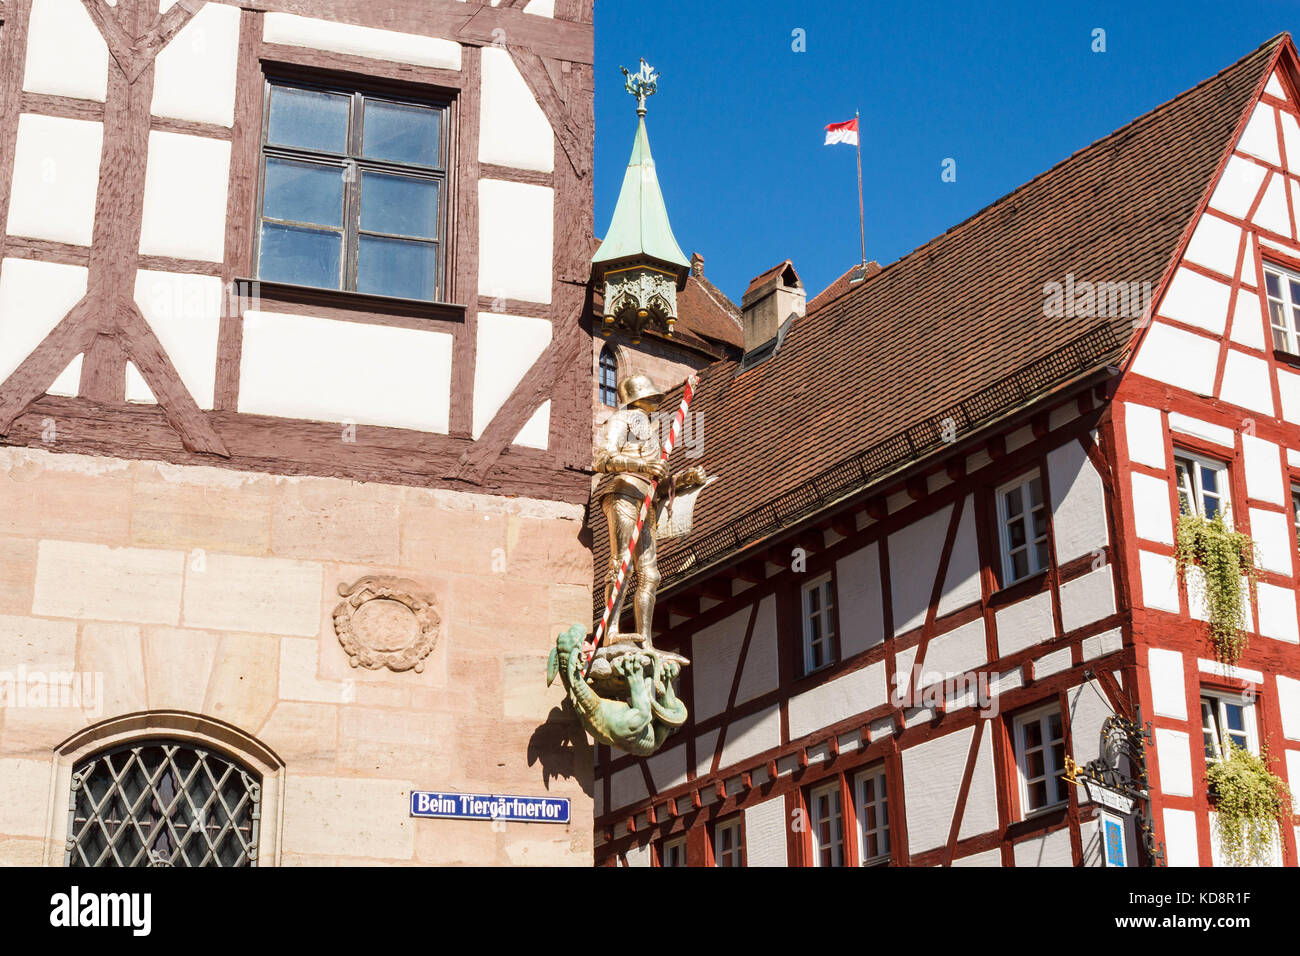 Maison Pilatushaus (Pilatus) dans la vieille ville de Nuremberg. Une statue de saint Georges en golden armor vaincre le dragon sur le coin. Nuremberg, Ge Banque D'Images